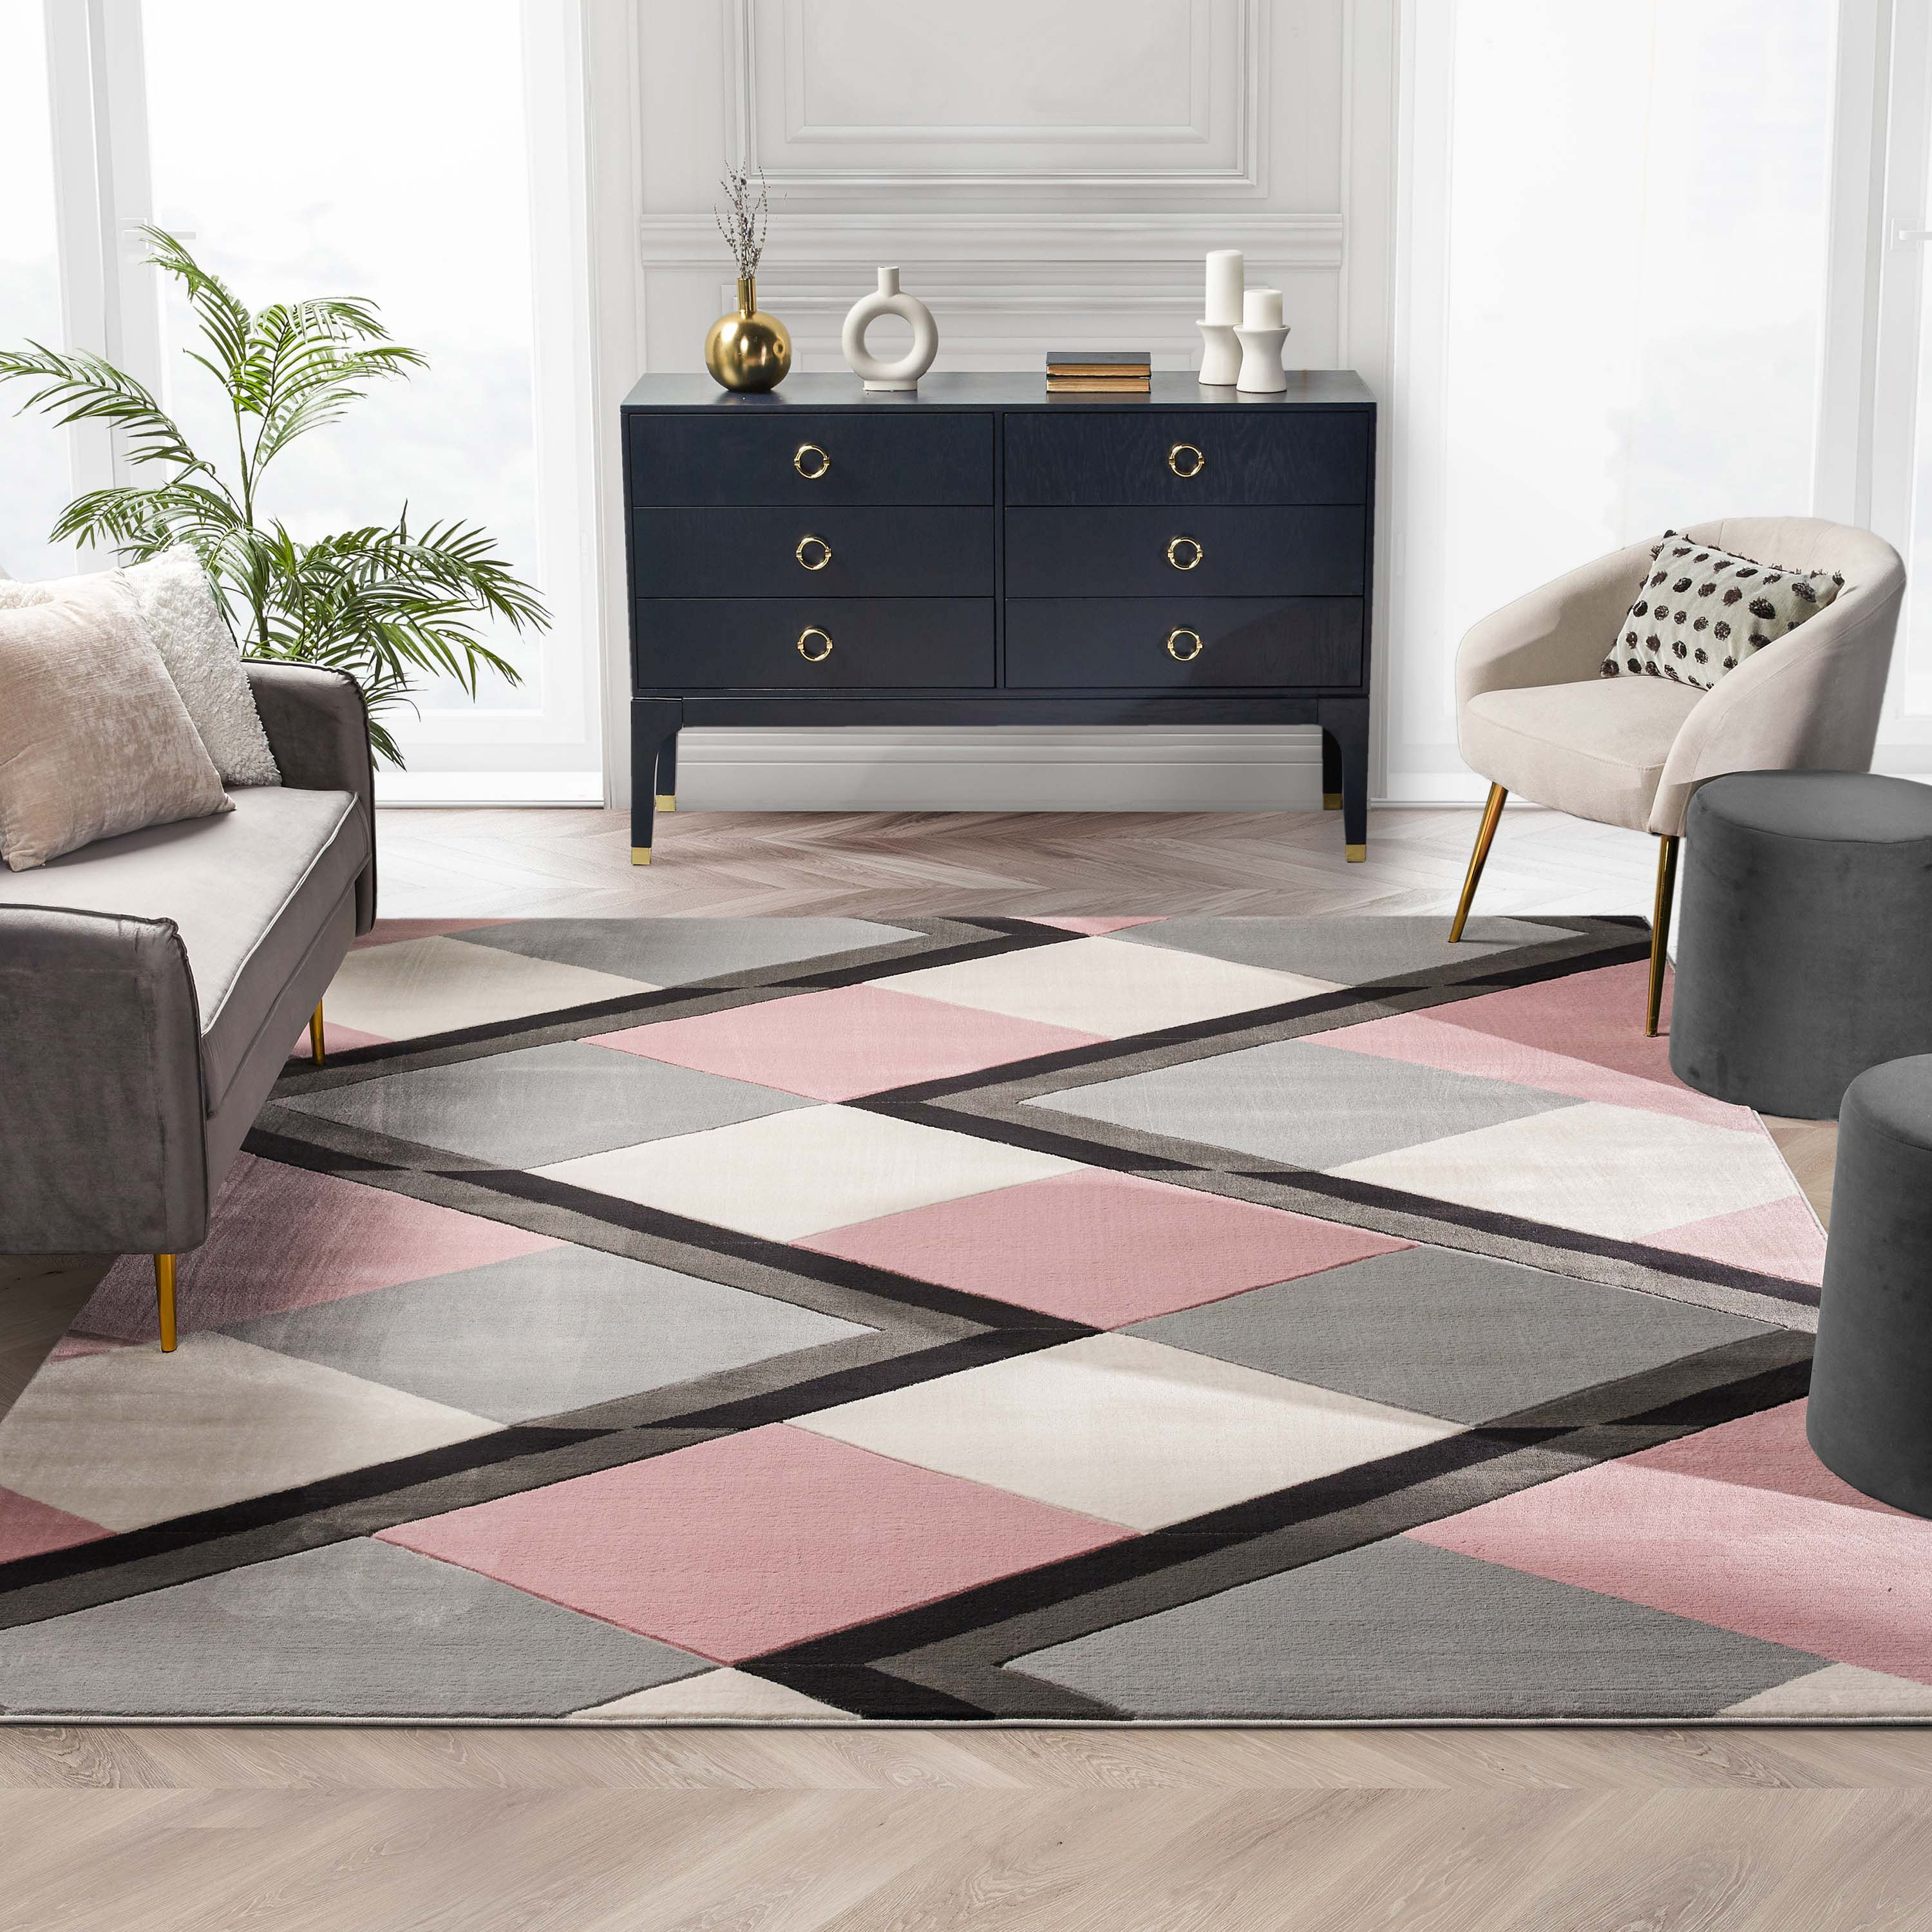 Well Woven Nora Blush Pink Modern Geometric Stripes 3D Textured Rug   Reviews | Wayfair